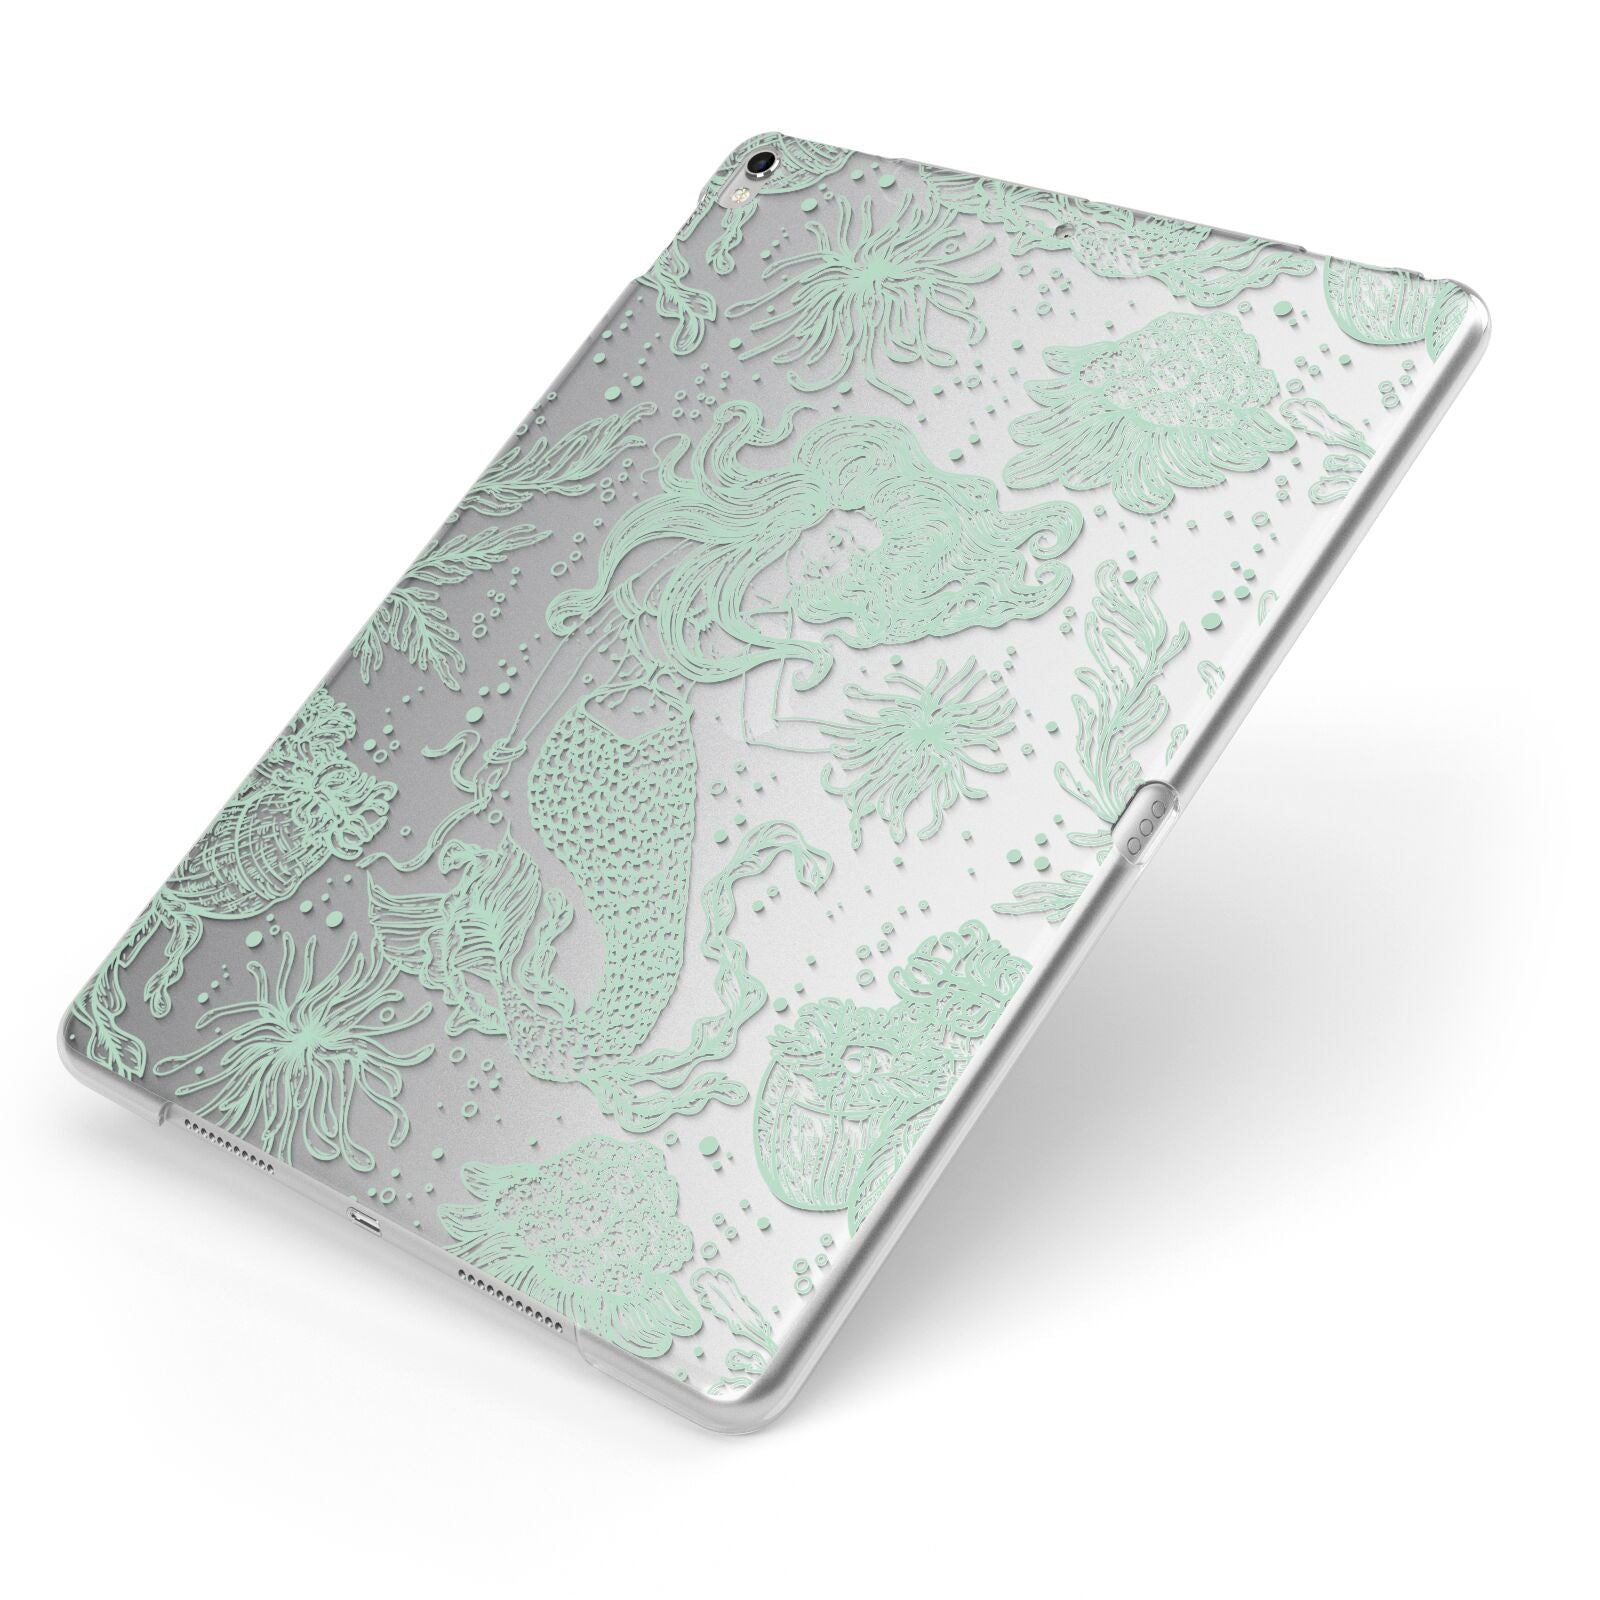 Sea Mermaid Apple iPad Case on Silver iPad Side View